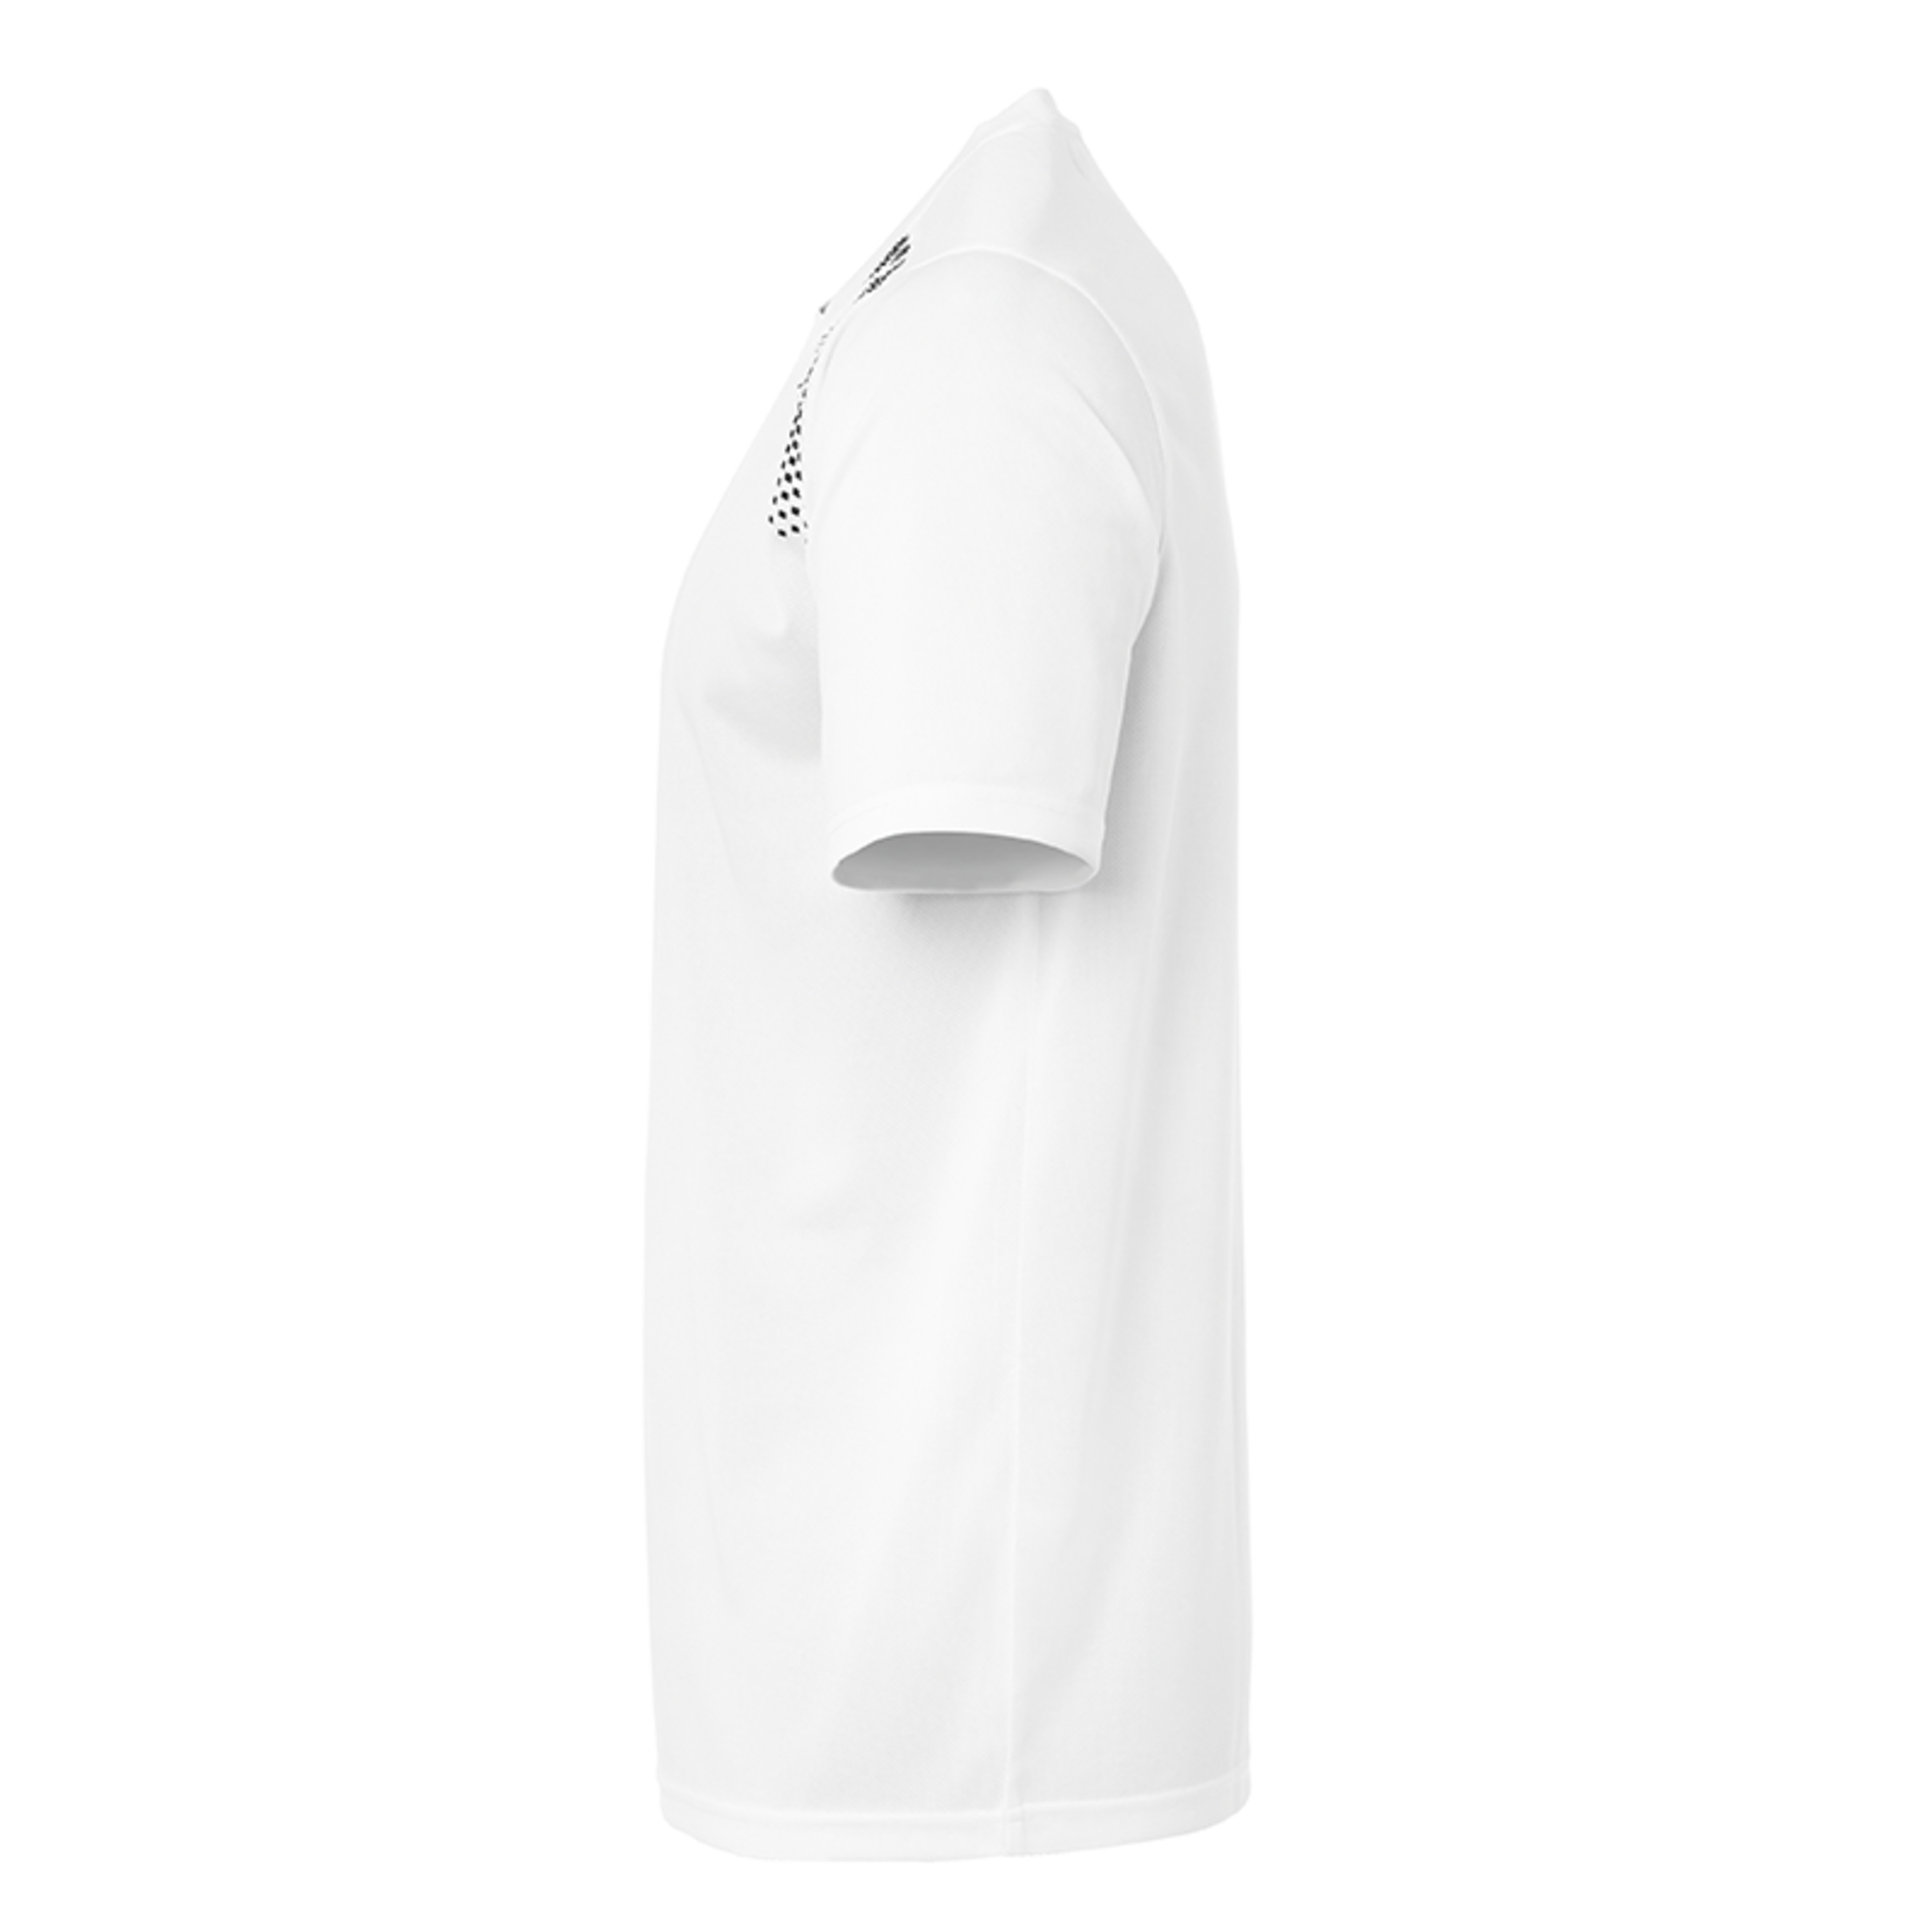 Goal Polyester Training T-shirt Blanco/negro Uhlsport